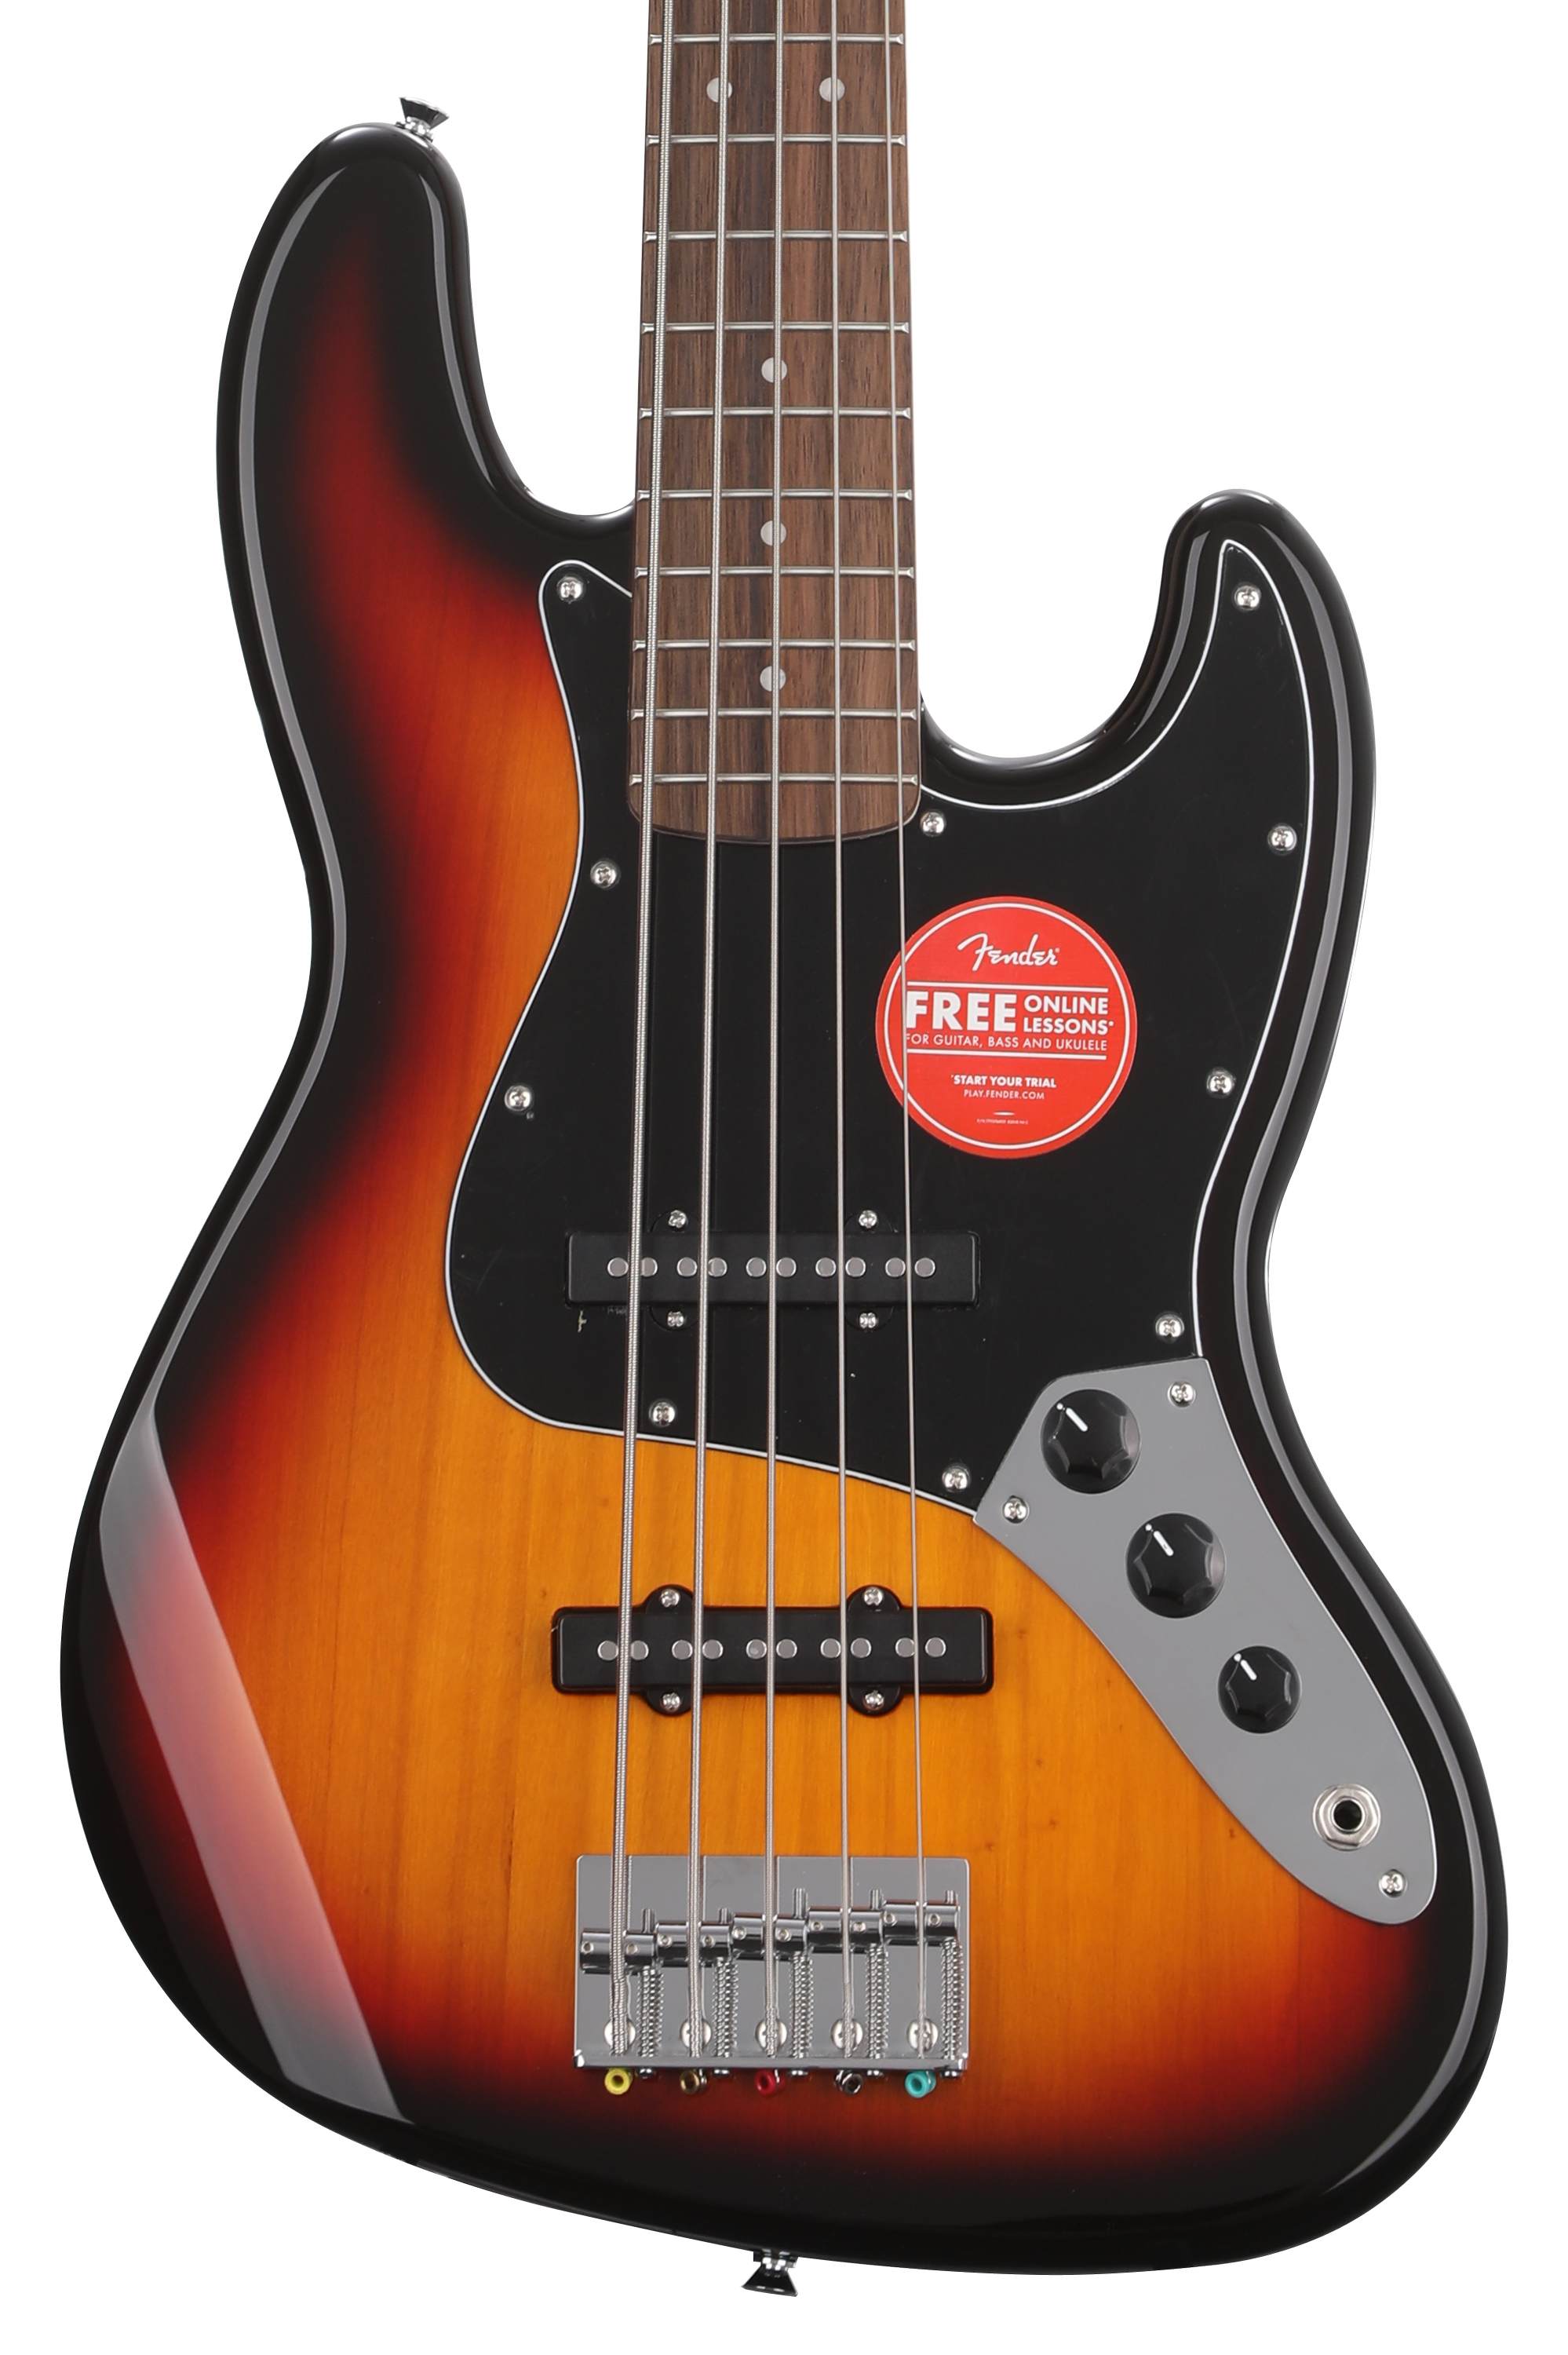 Bundled Item: Squier Affinity Series Jazz Bass V - 3-color Sunburst with Laurel Fingerboard